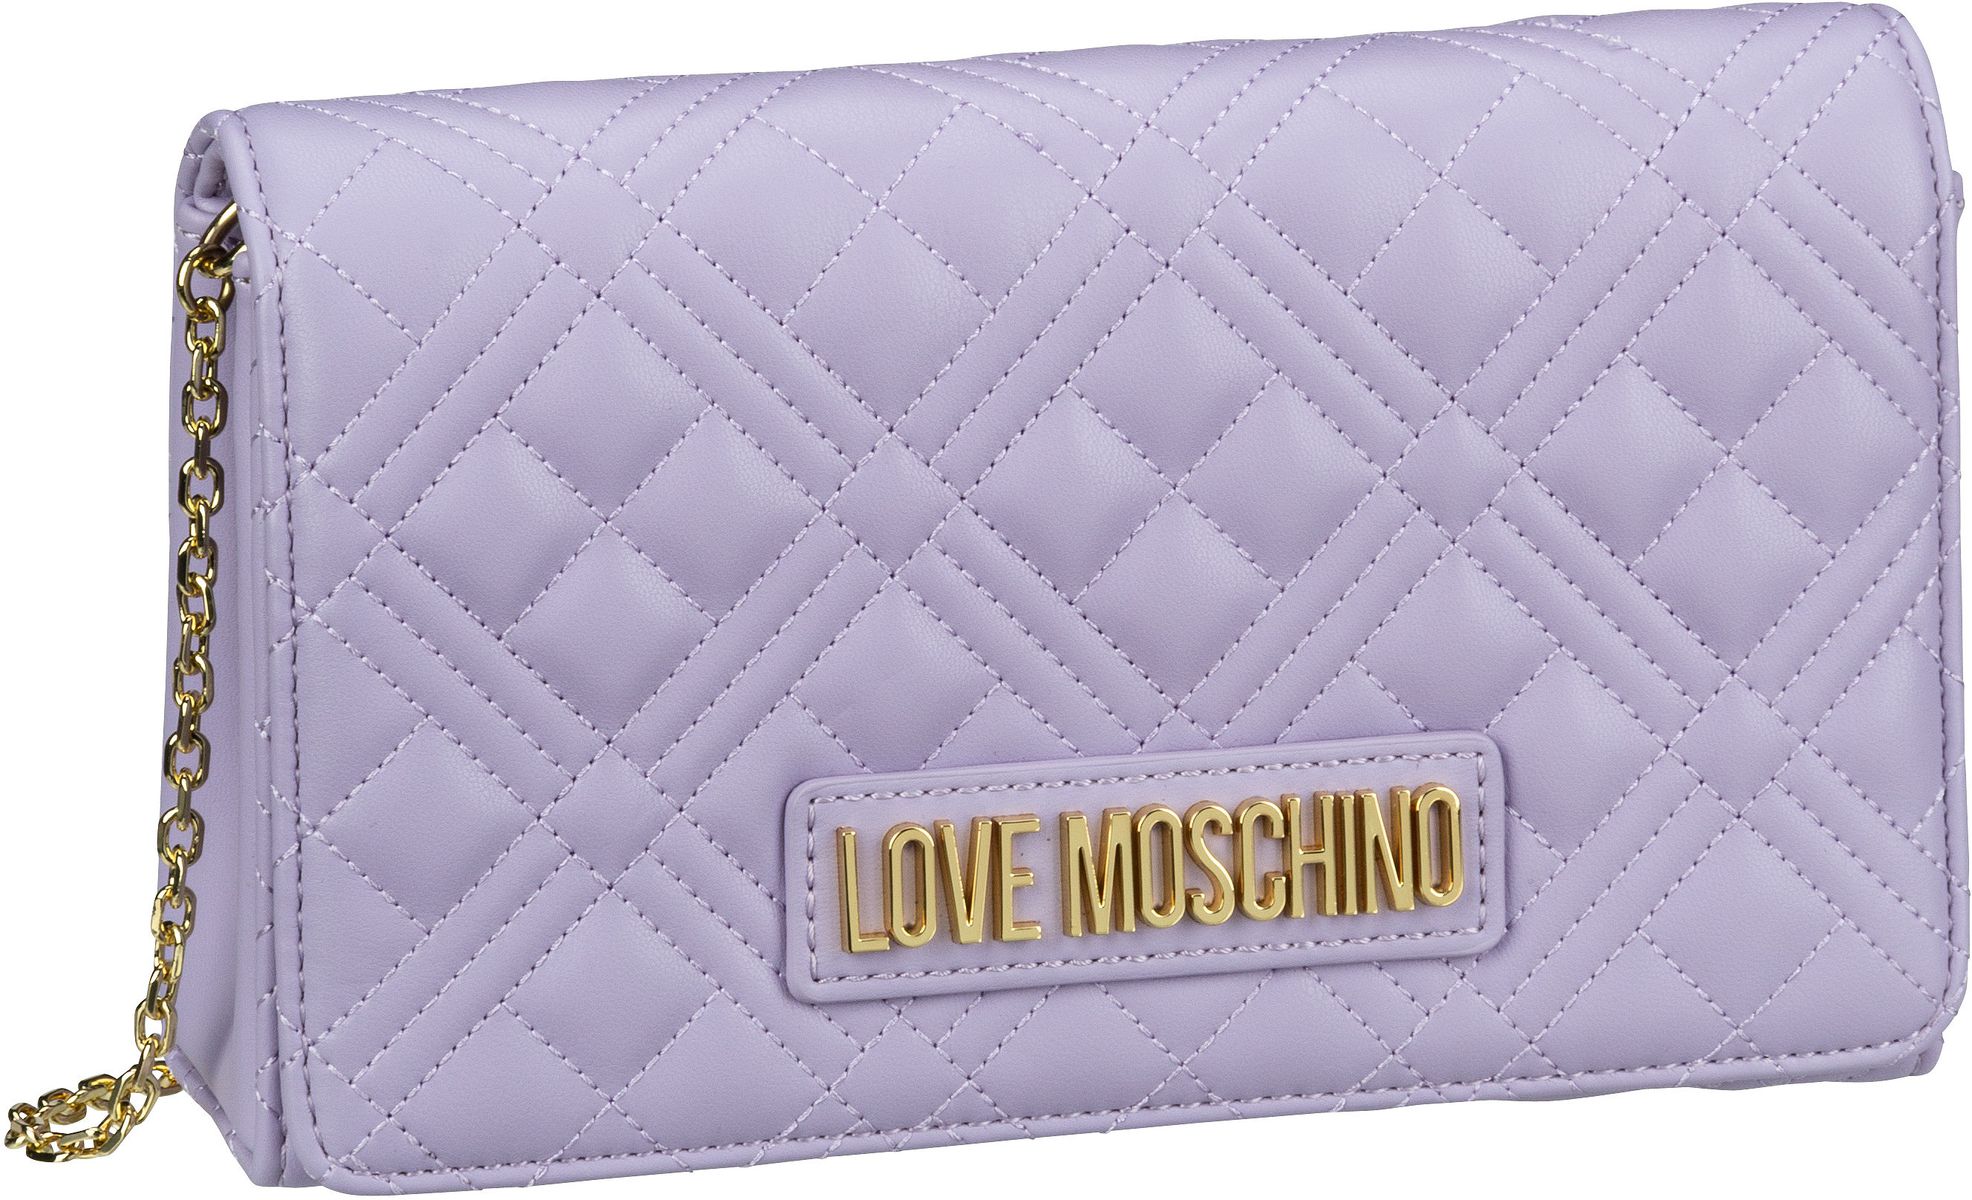 Love Moschino Umhängetasche Evening Bag 4079 Lilac (1.7 Liter)  - Onlineshop Taschenkaufhaus